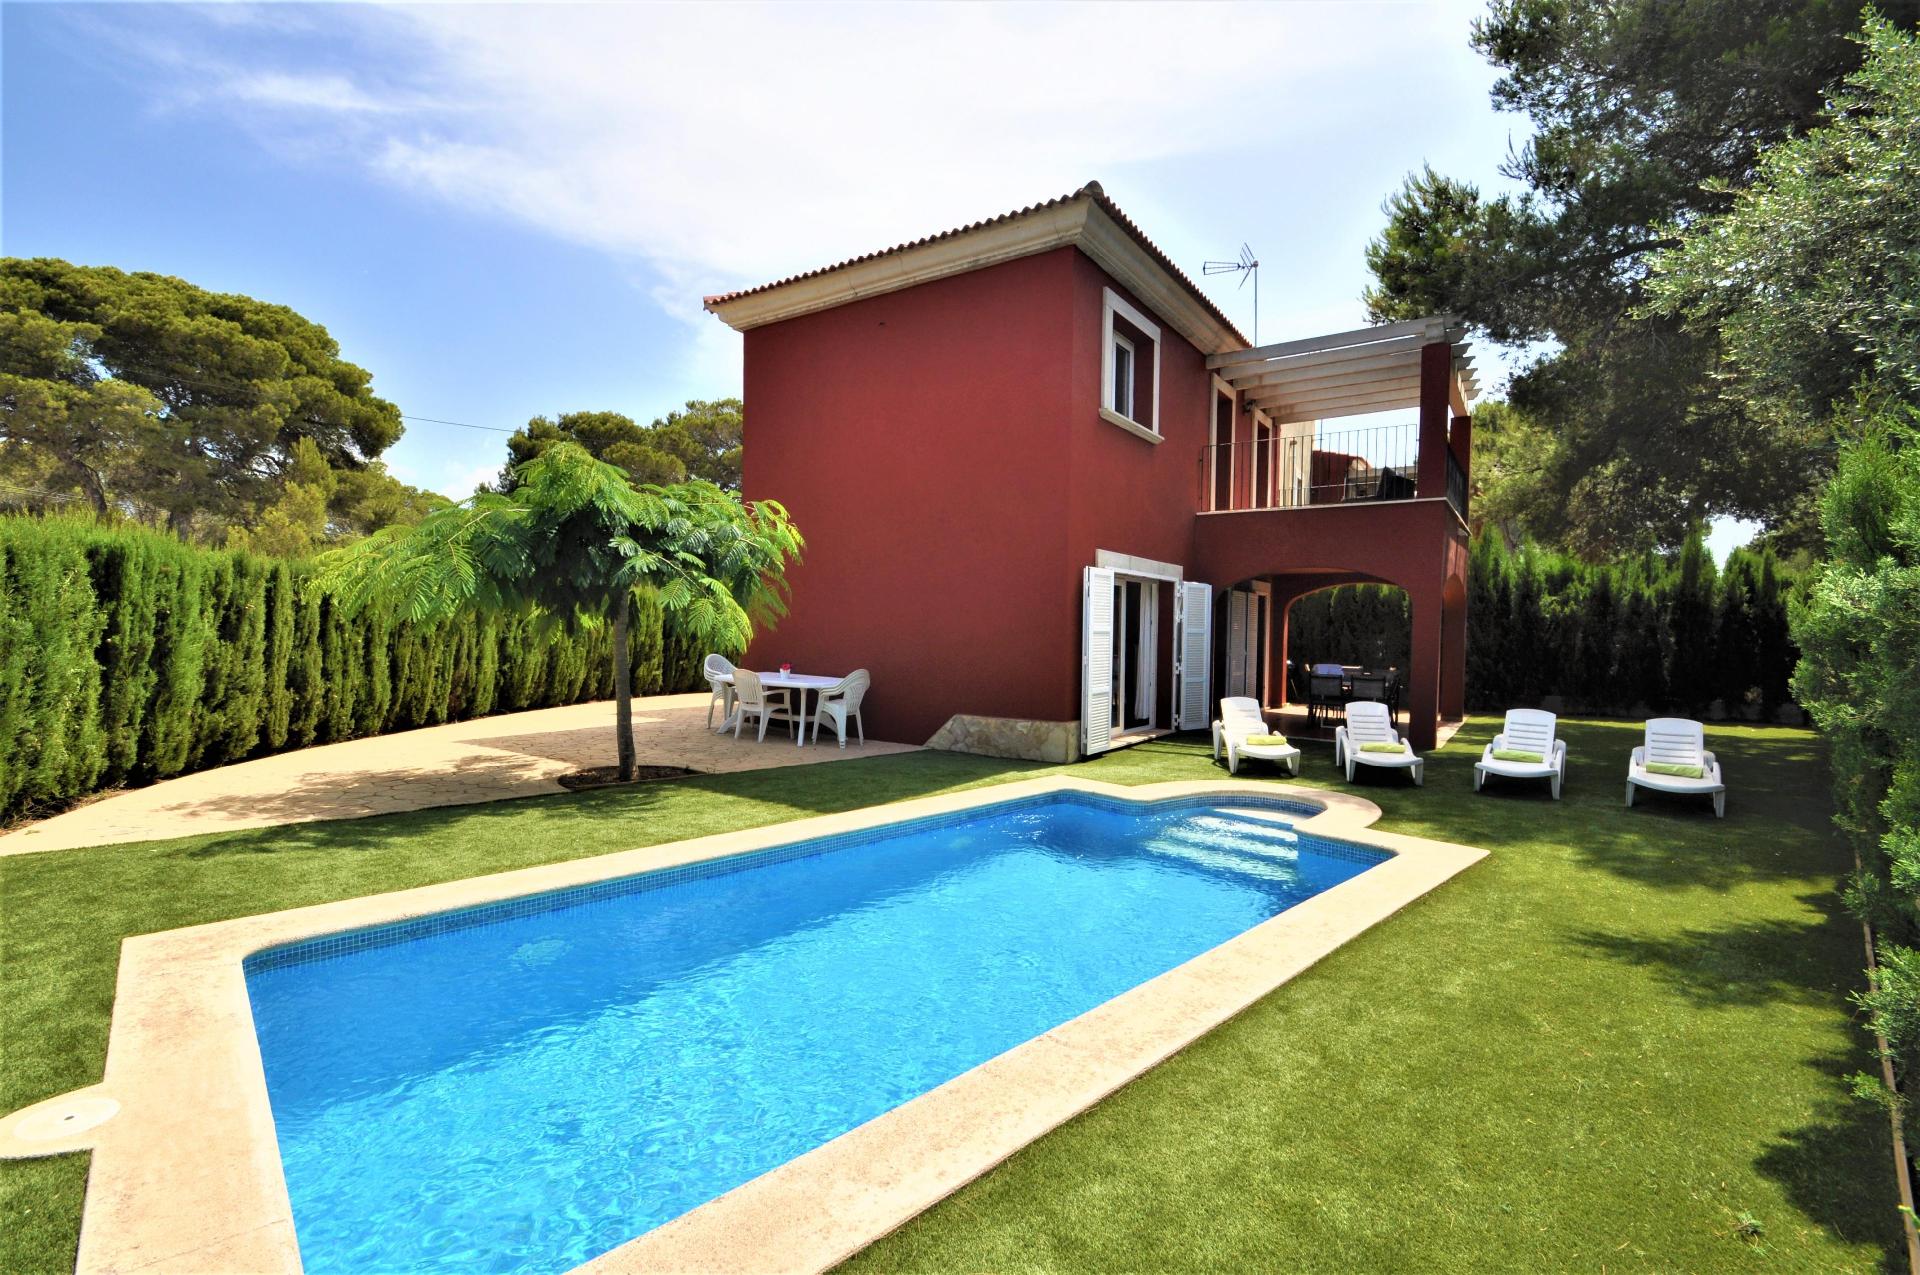 VILLA ALBENIZ en Zona residencial tranquila con piscina privada ideal para familias WiFi Gratis